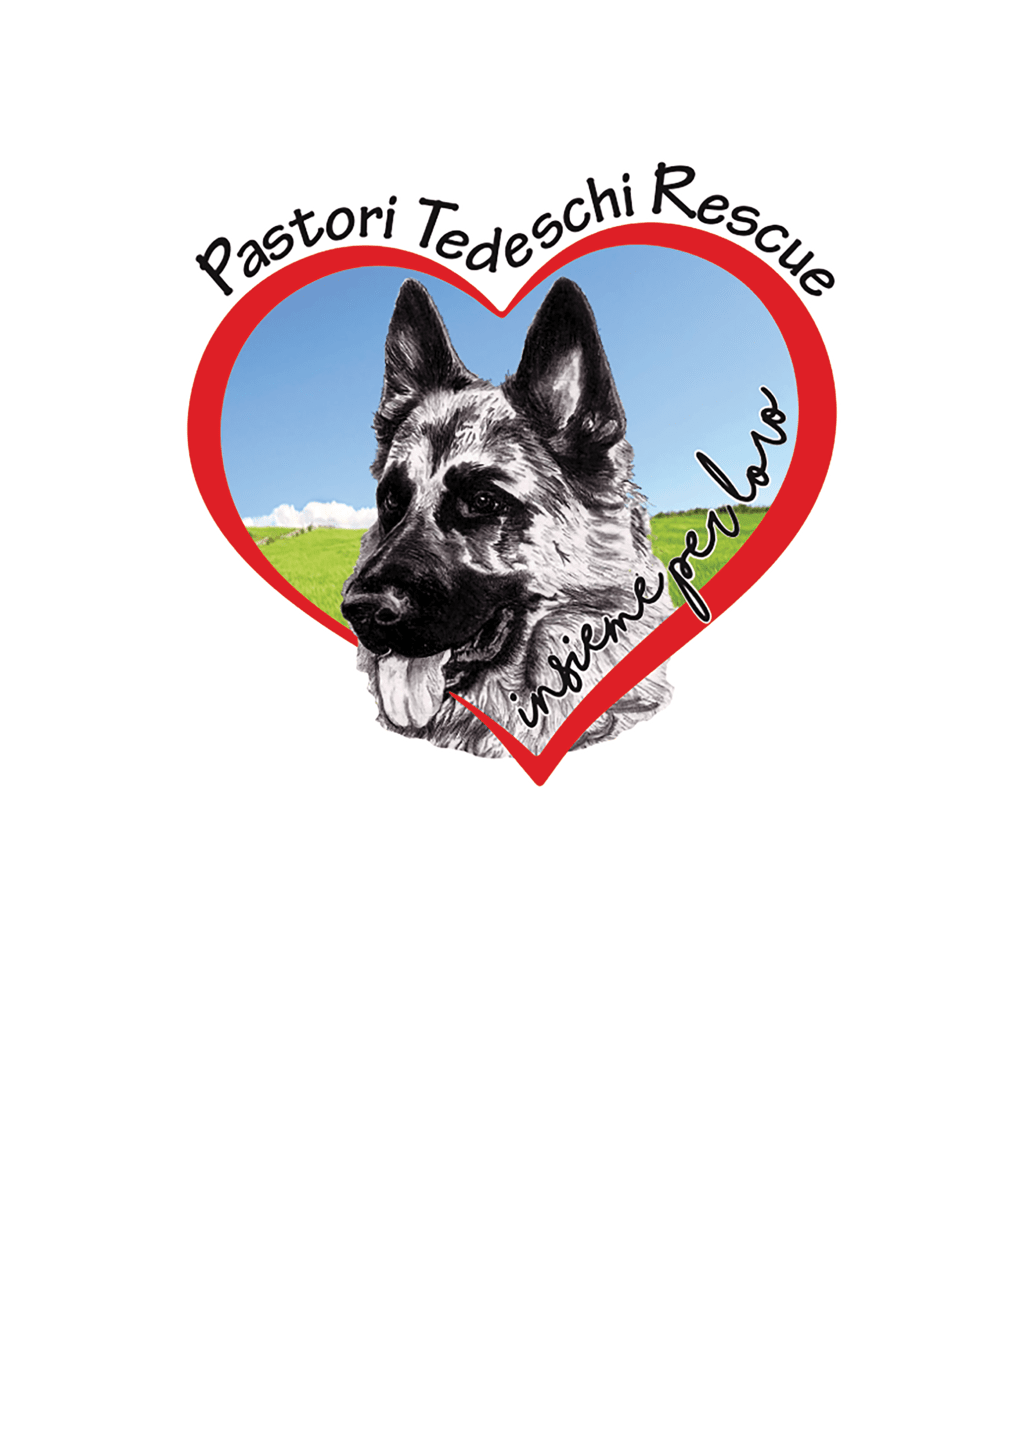 Pastori tedeschi rescue - Logo